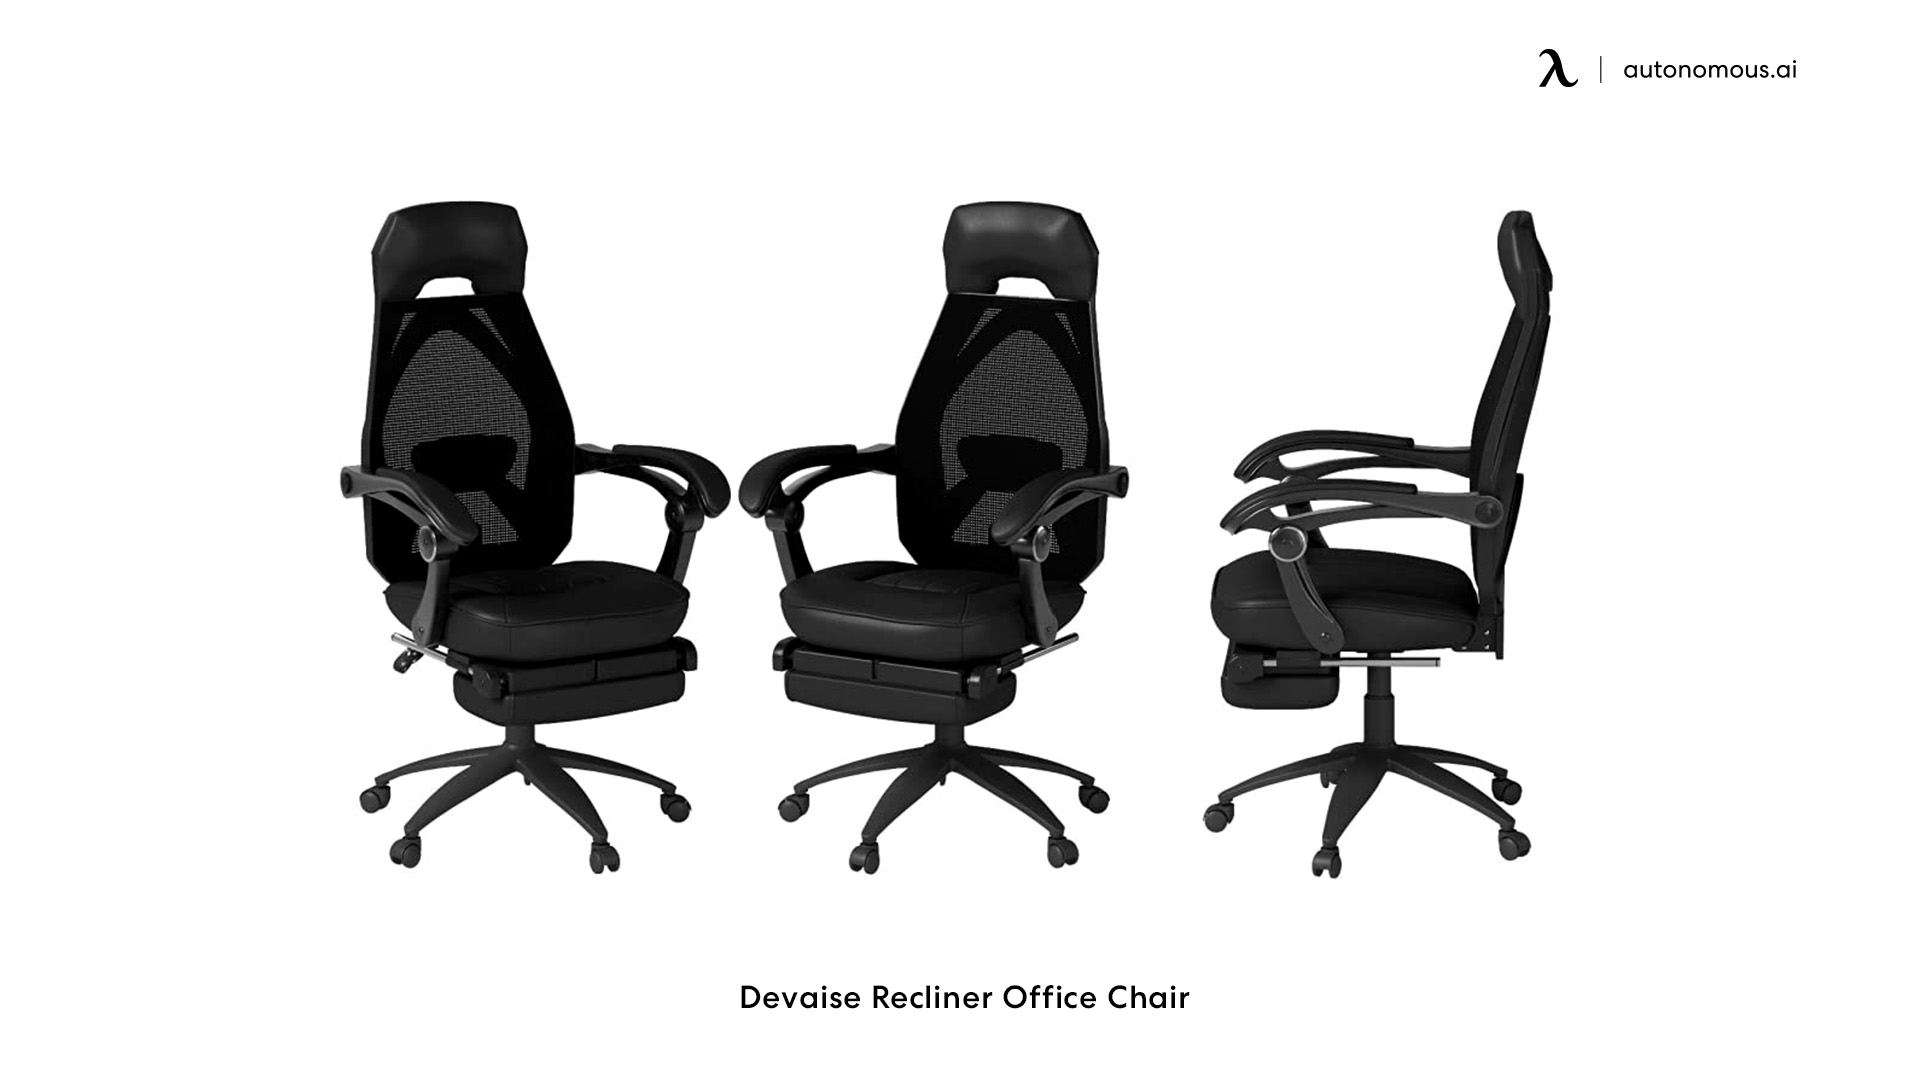 Devaise Recliner Office Chair